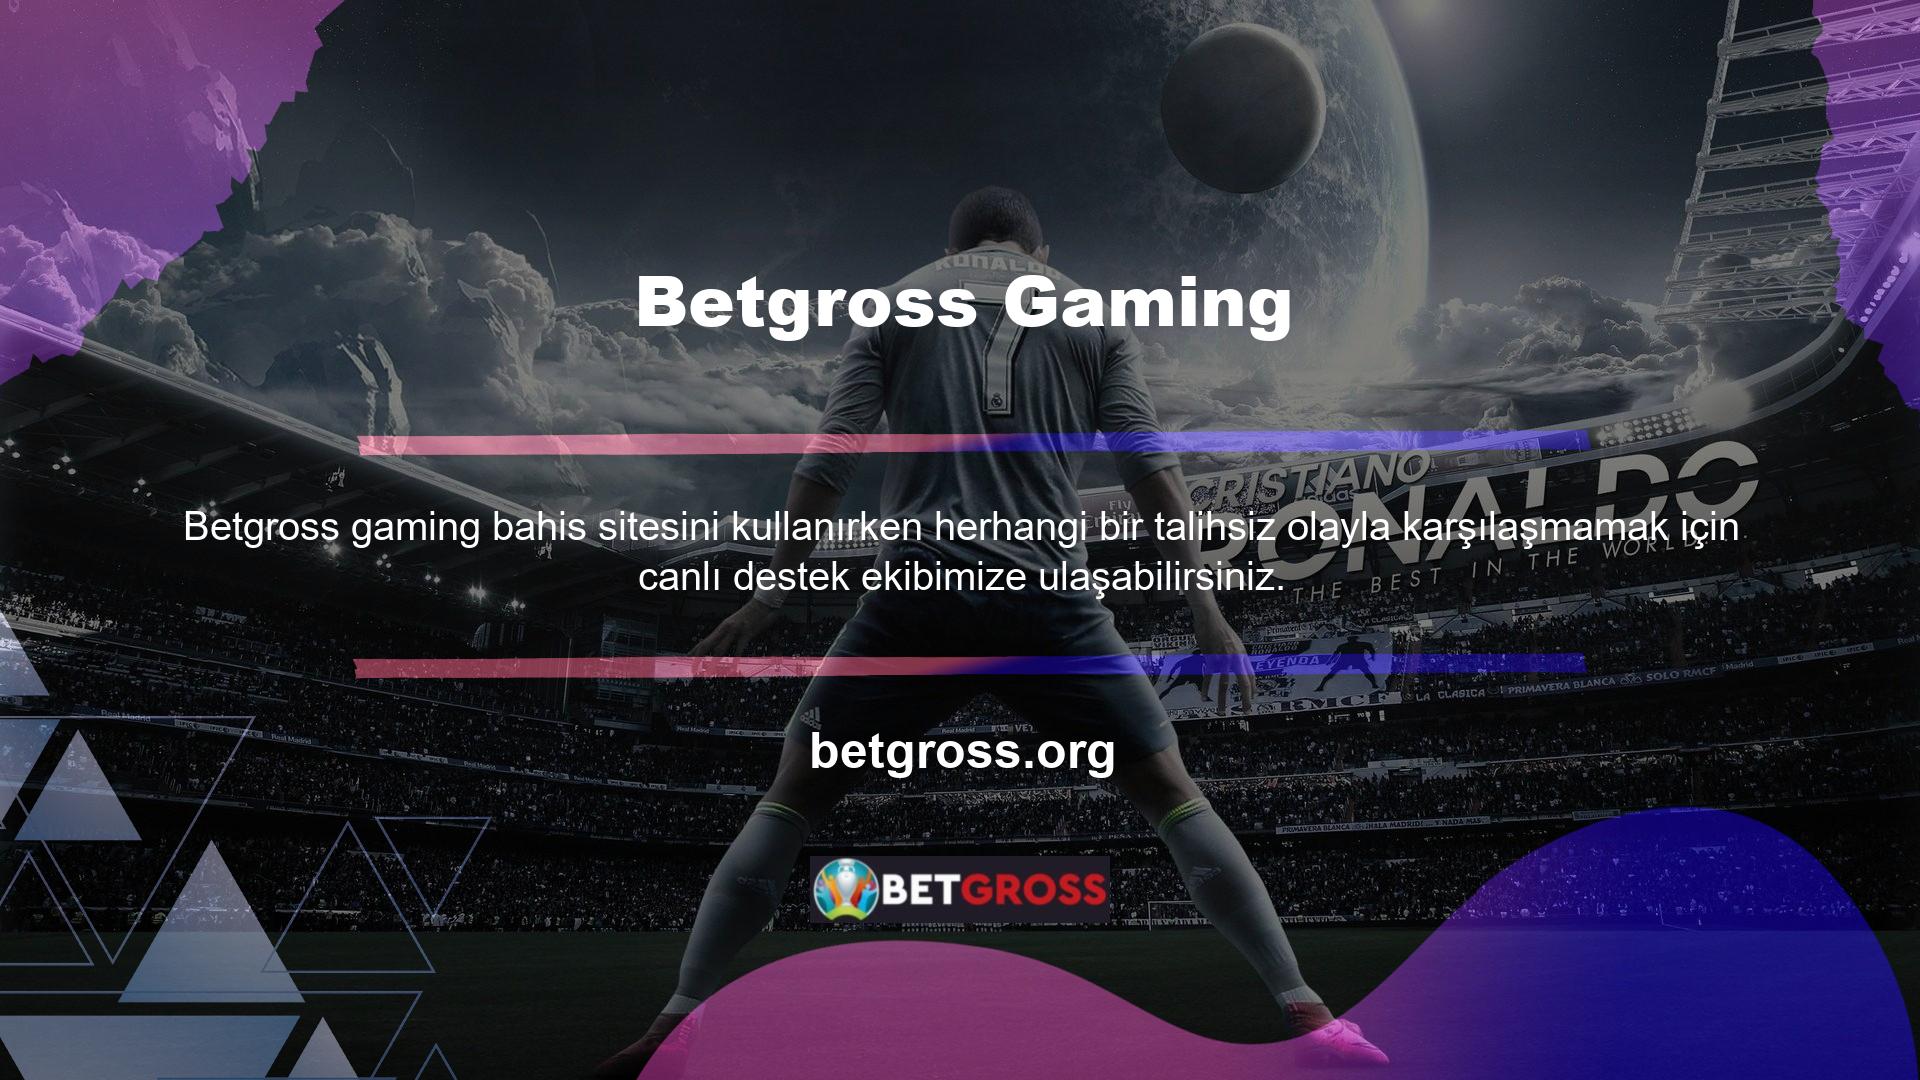 Mevcut Betgross bağlantısı, oyun oynayanlar için güvenilir bir gelir kaynağıdır